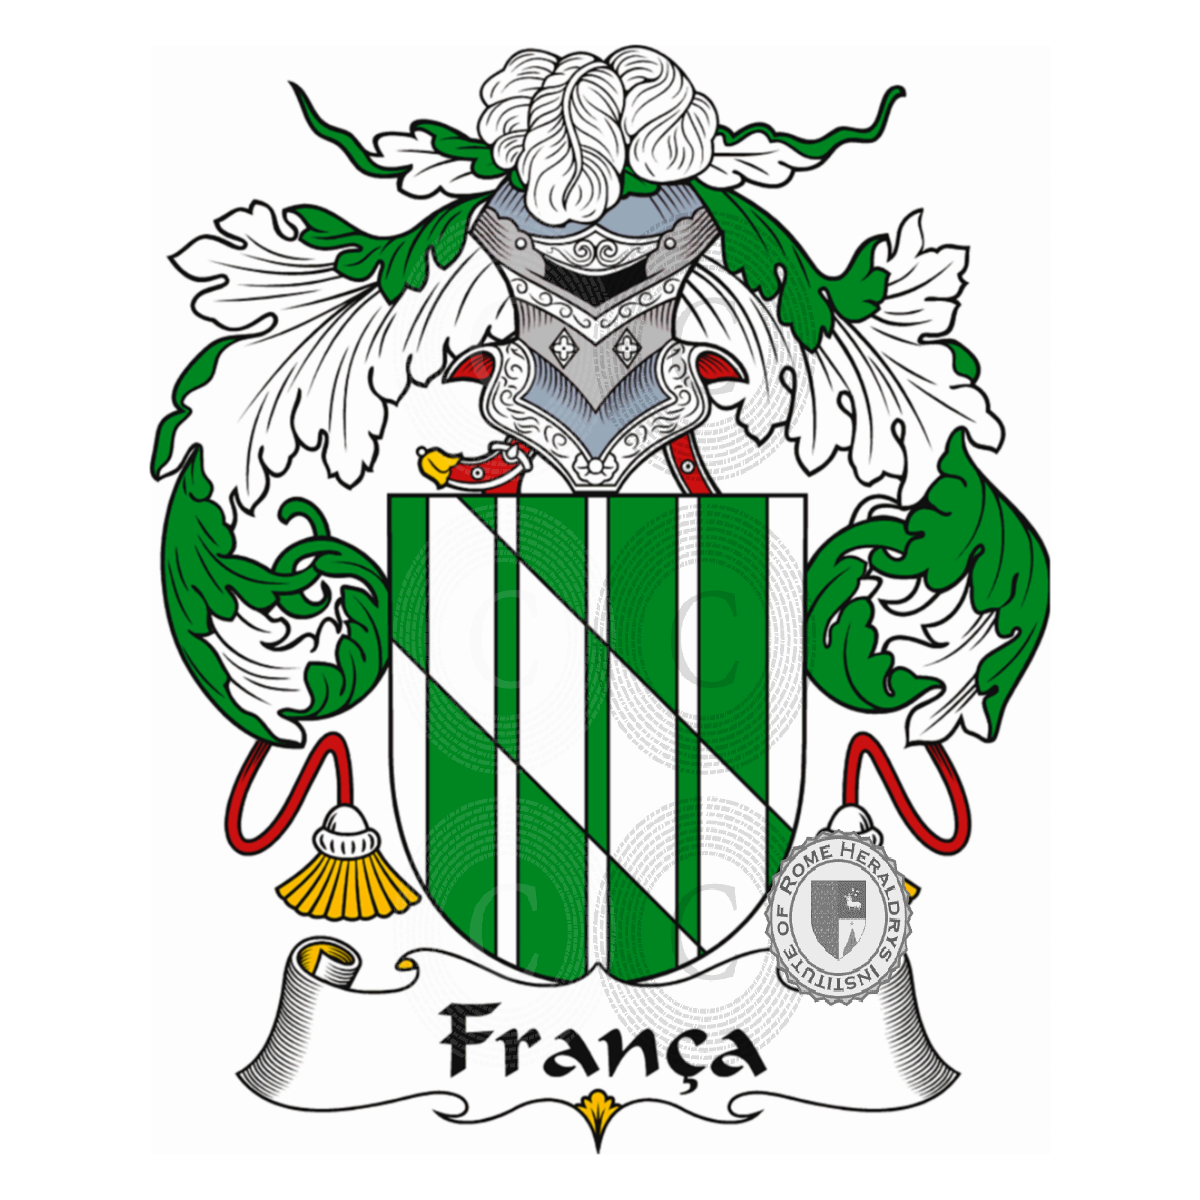 Coat of arms of familyFrança, de França,de Franqui,Franca,Franco,Franqui